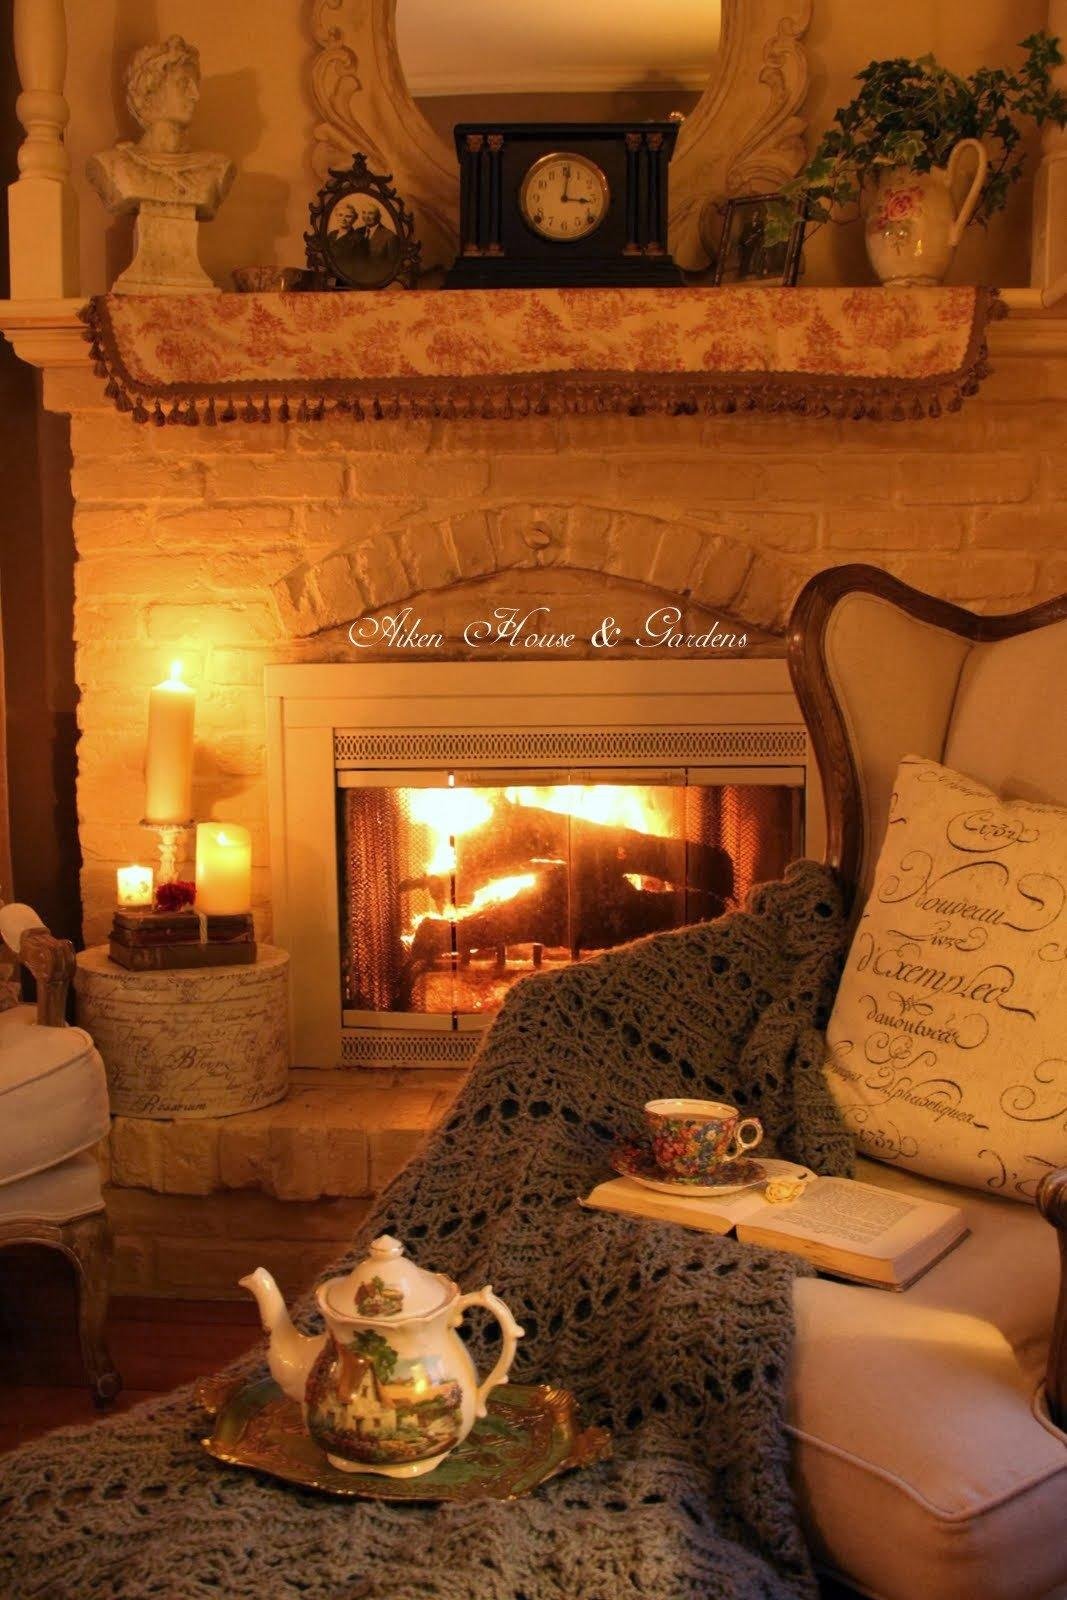 Тепло и уют в доме: 5 простых советов для идеальной хозяйки